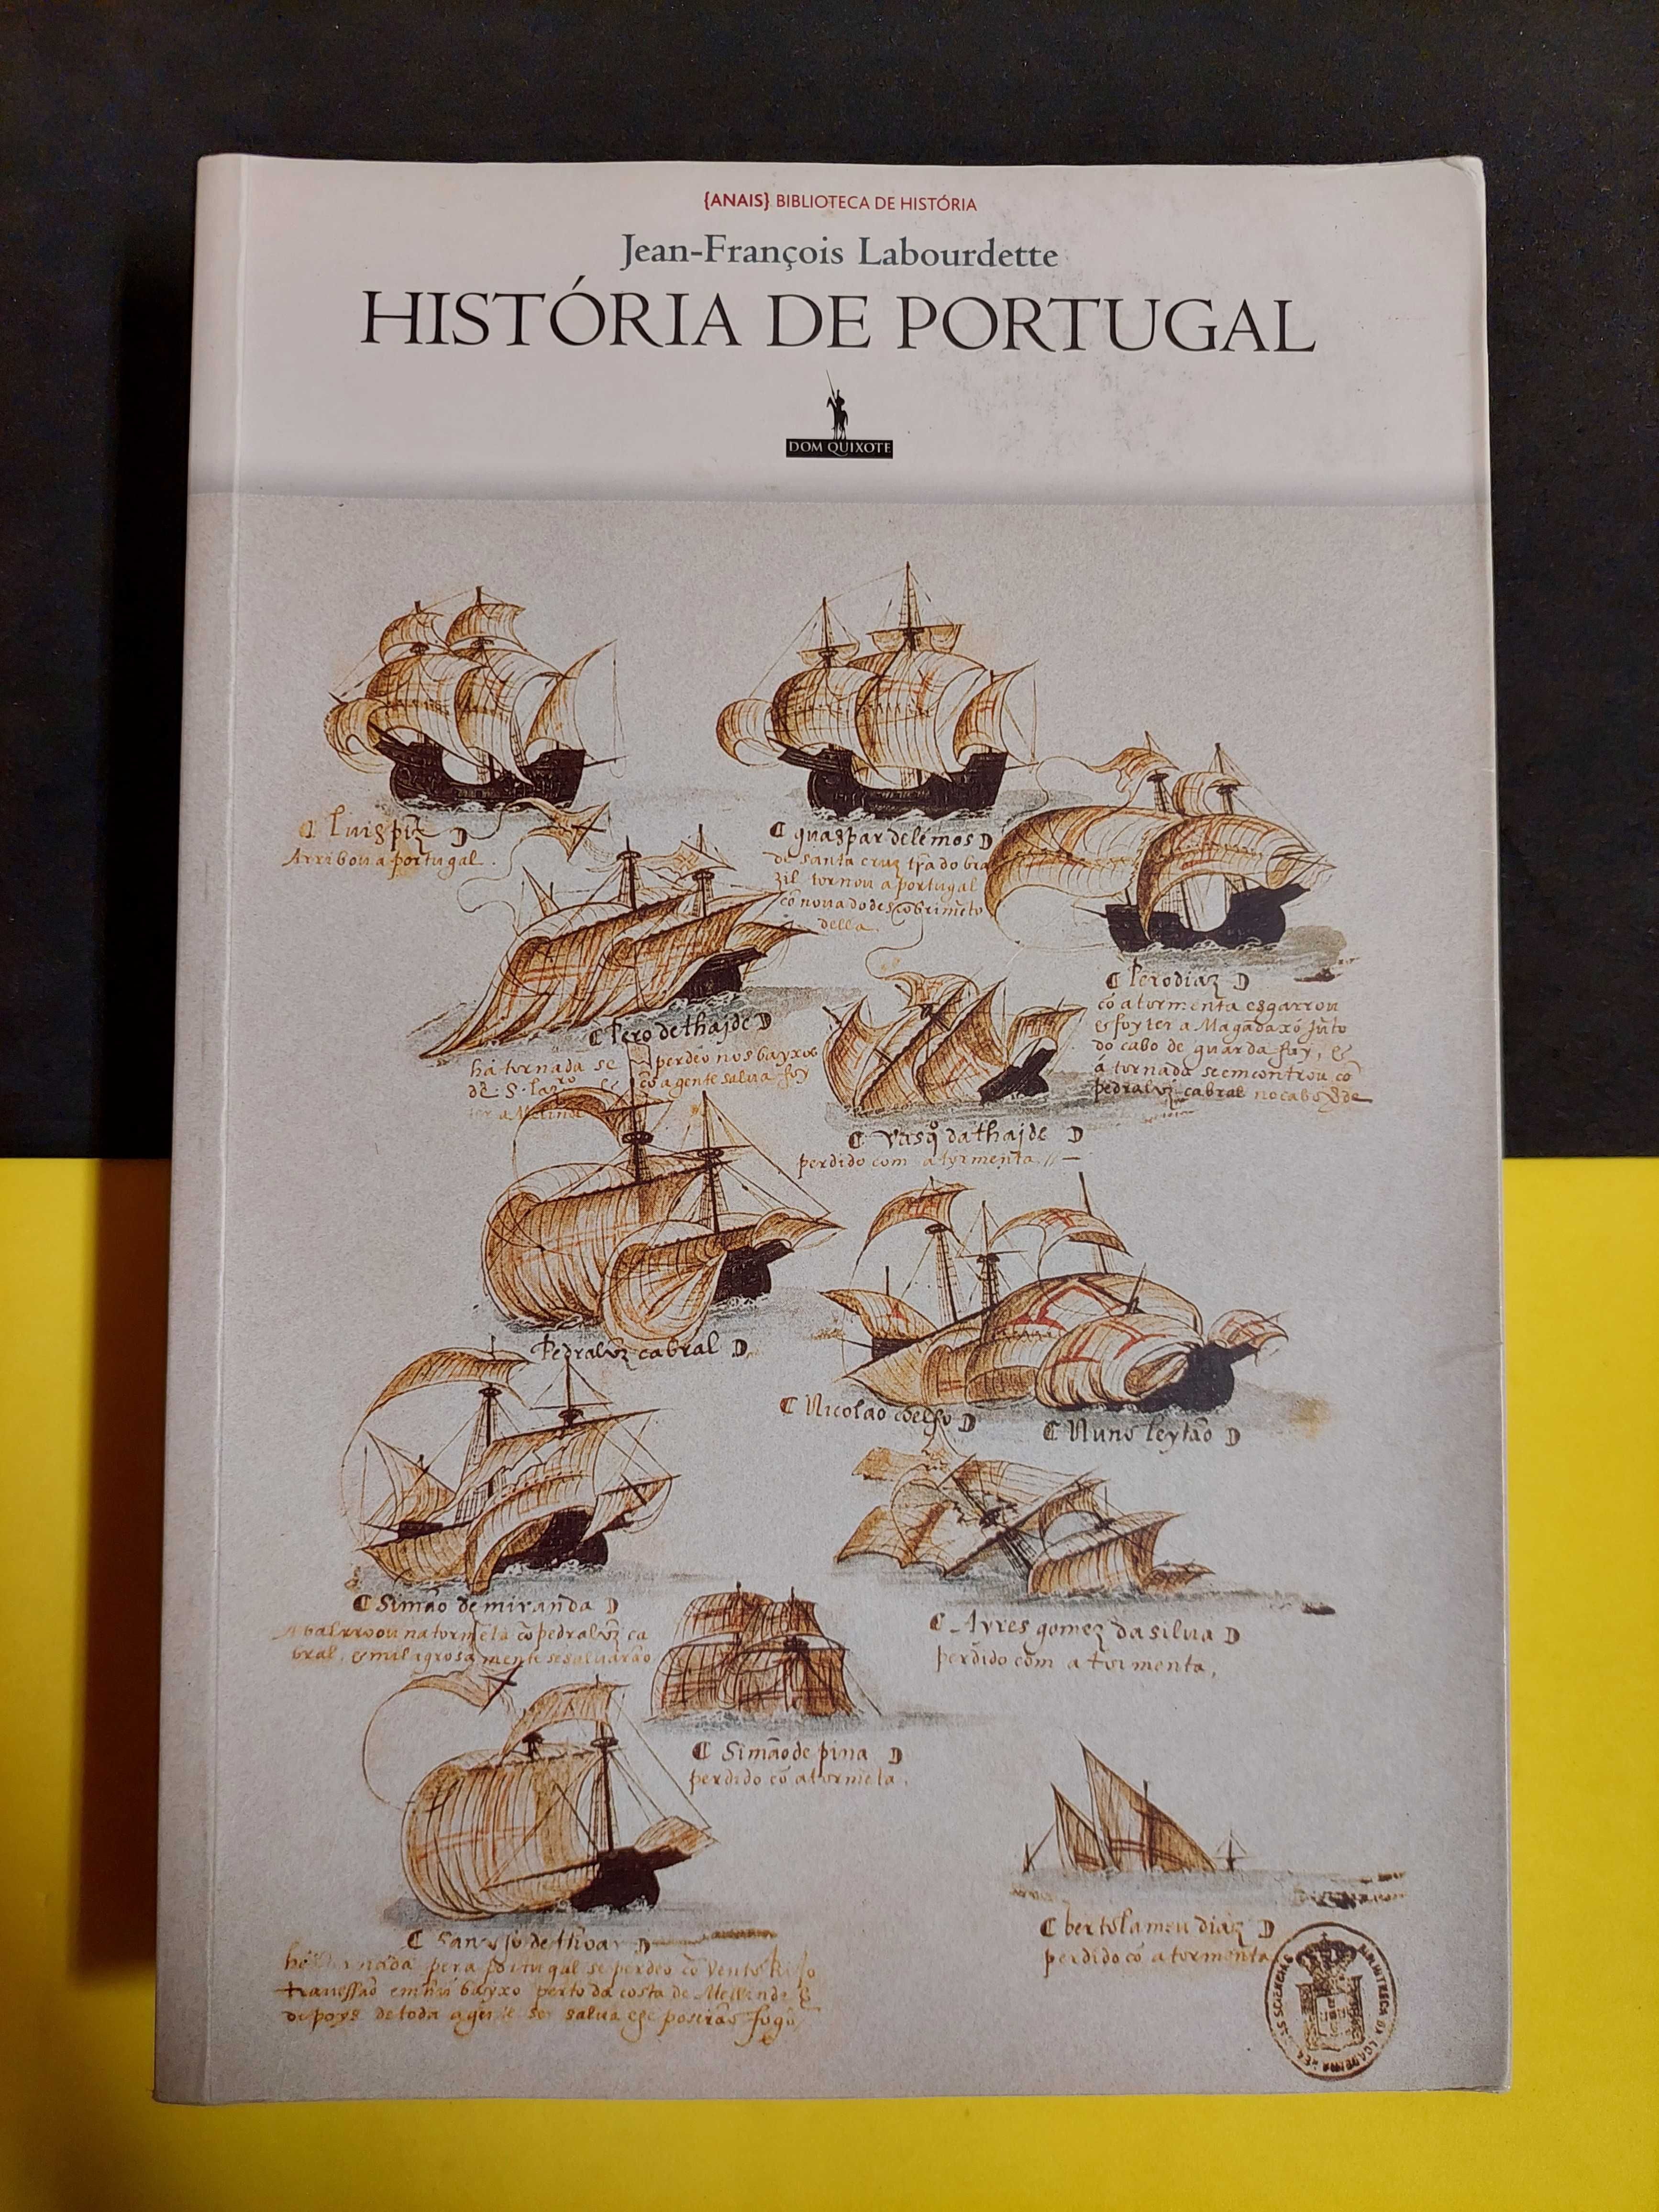 Jean-François Labourdette - História de Portugal